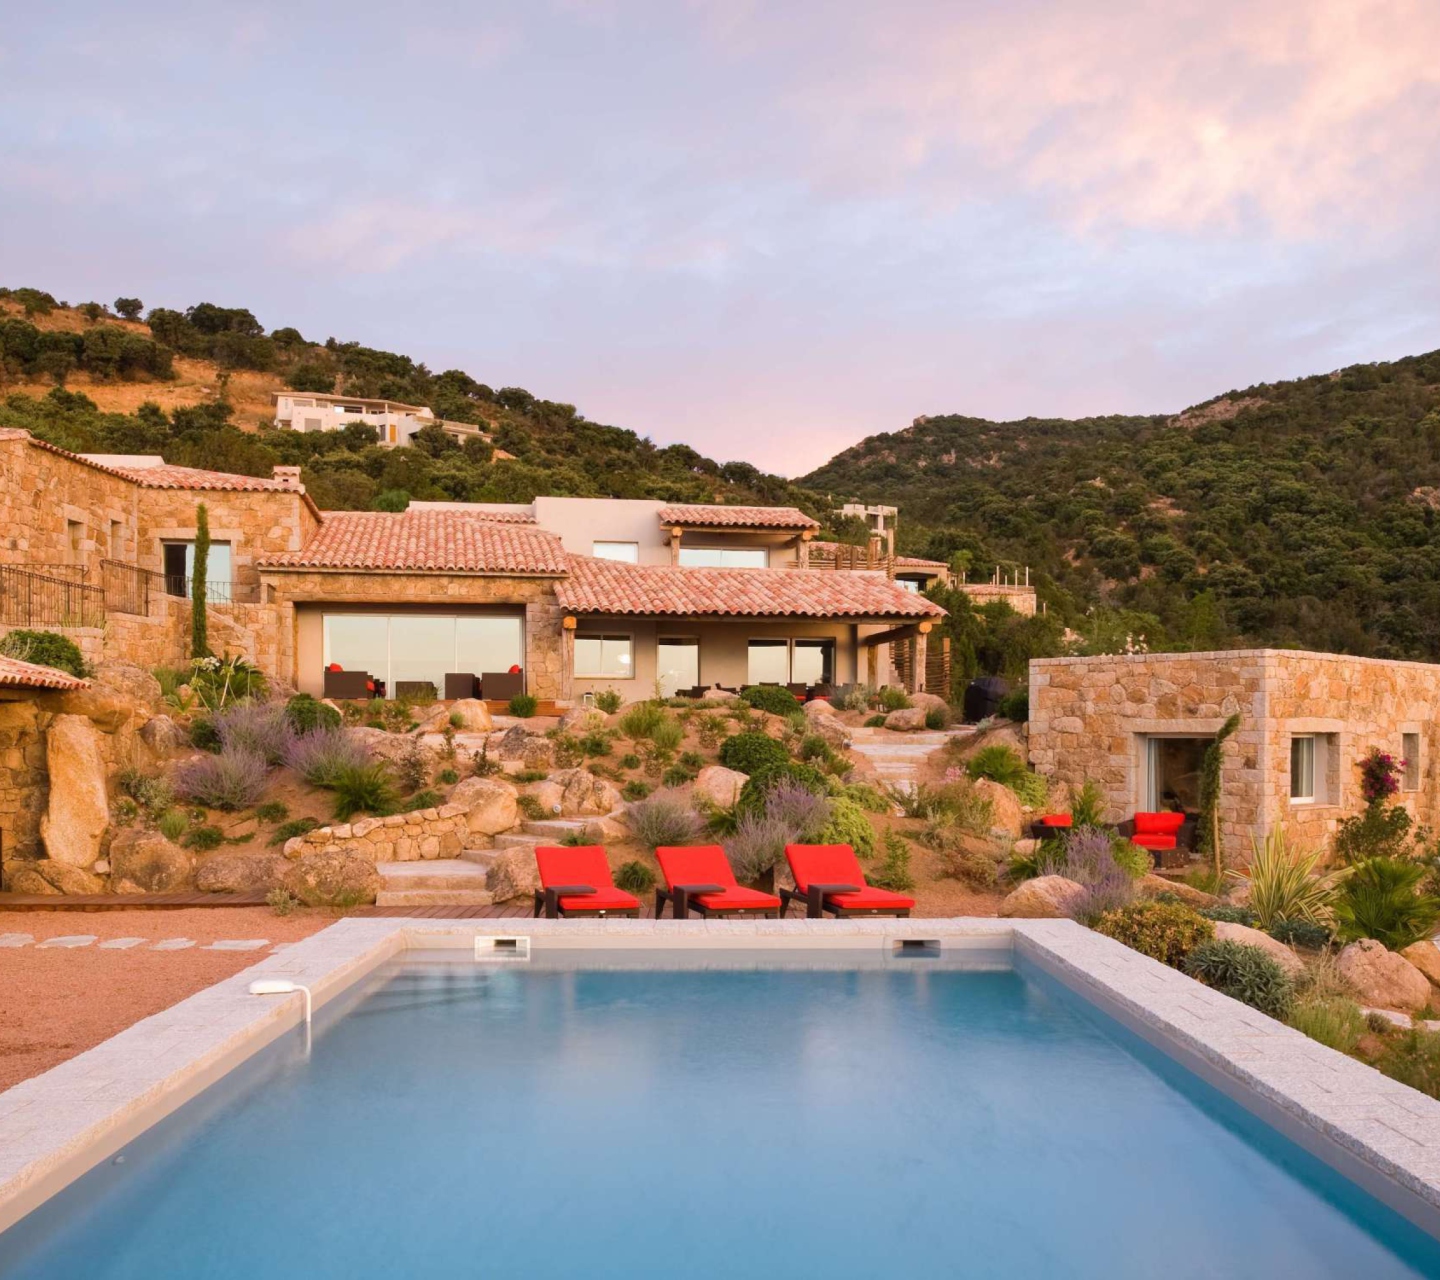 Villa Luna, Corsica, France screenshot #1 1440x1280